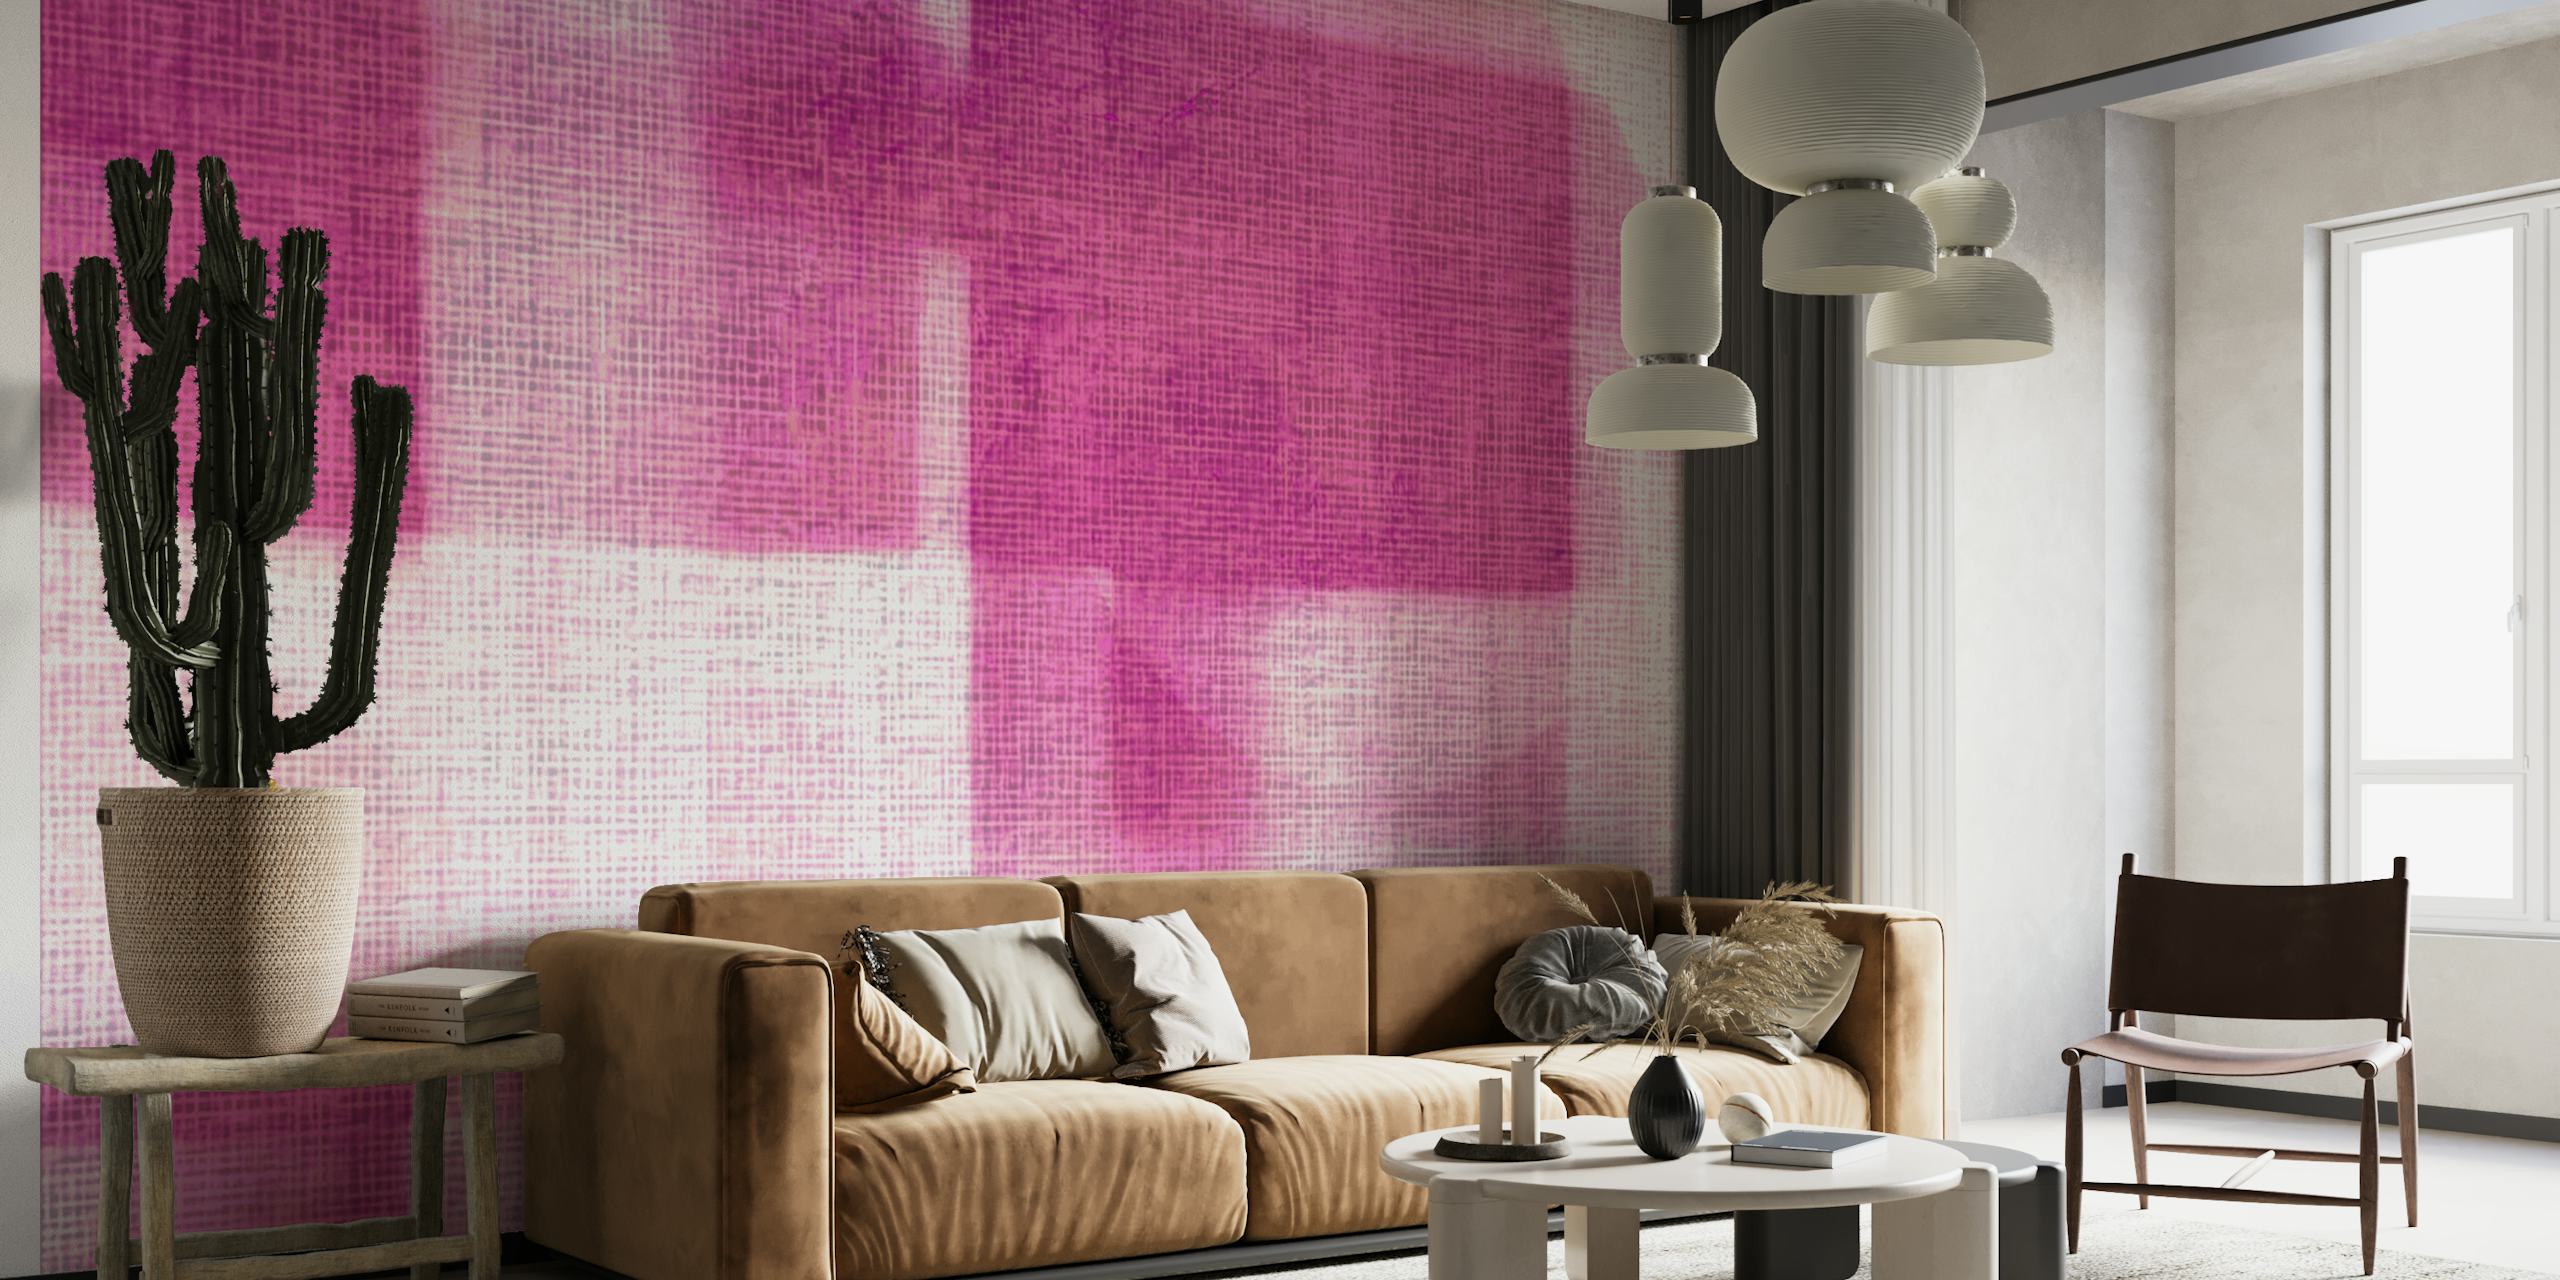 Mural de parede roxo abstrato inspirado na estética japonesa